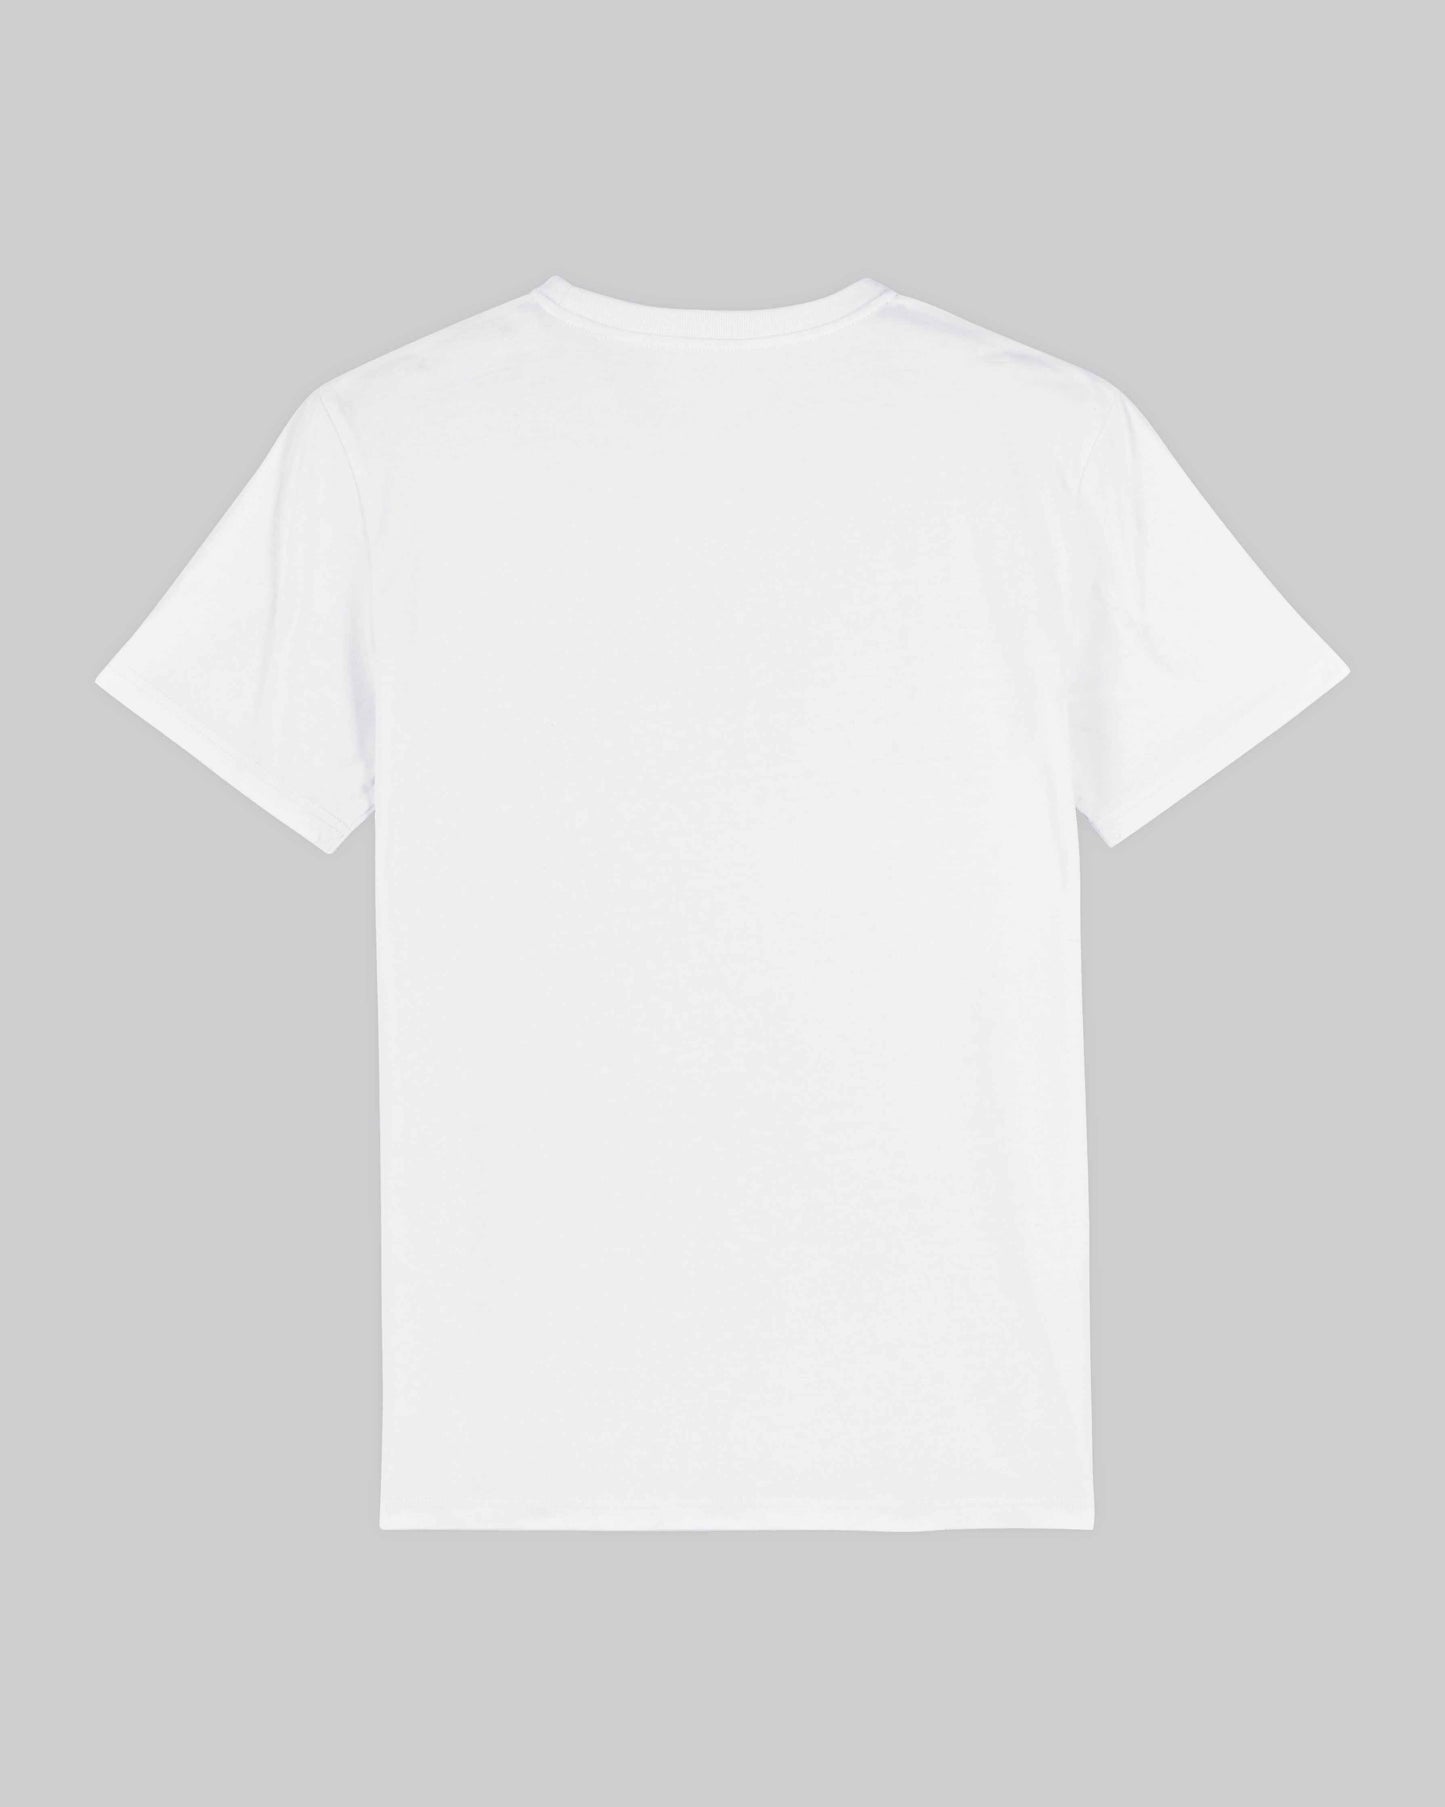 EINHORST® unisex Organic Shirt in Weiß mit dem Motiv "pride Regenbogen" in der Kombination bunter Regenbogen mit schwarzer Schrift, Bild von Shirt von hinten